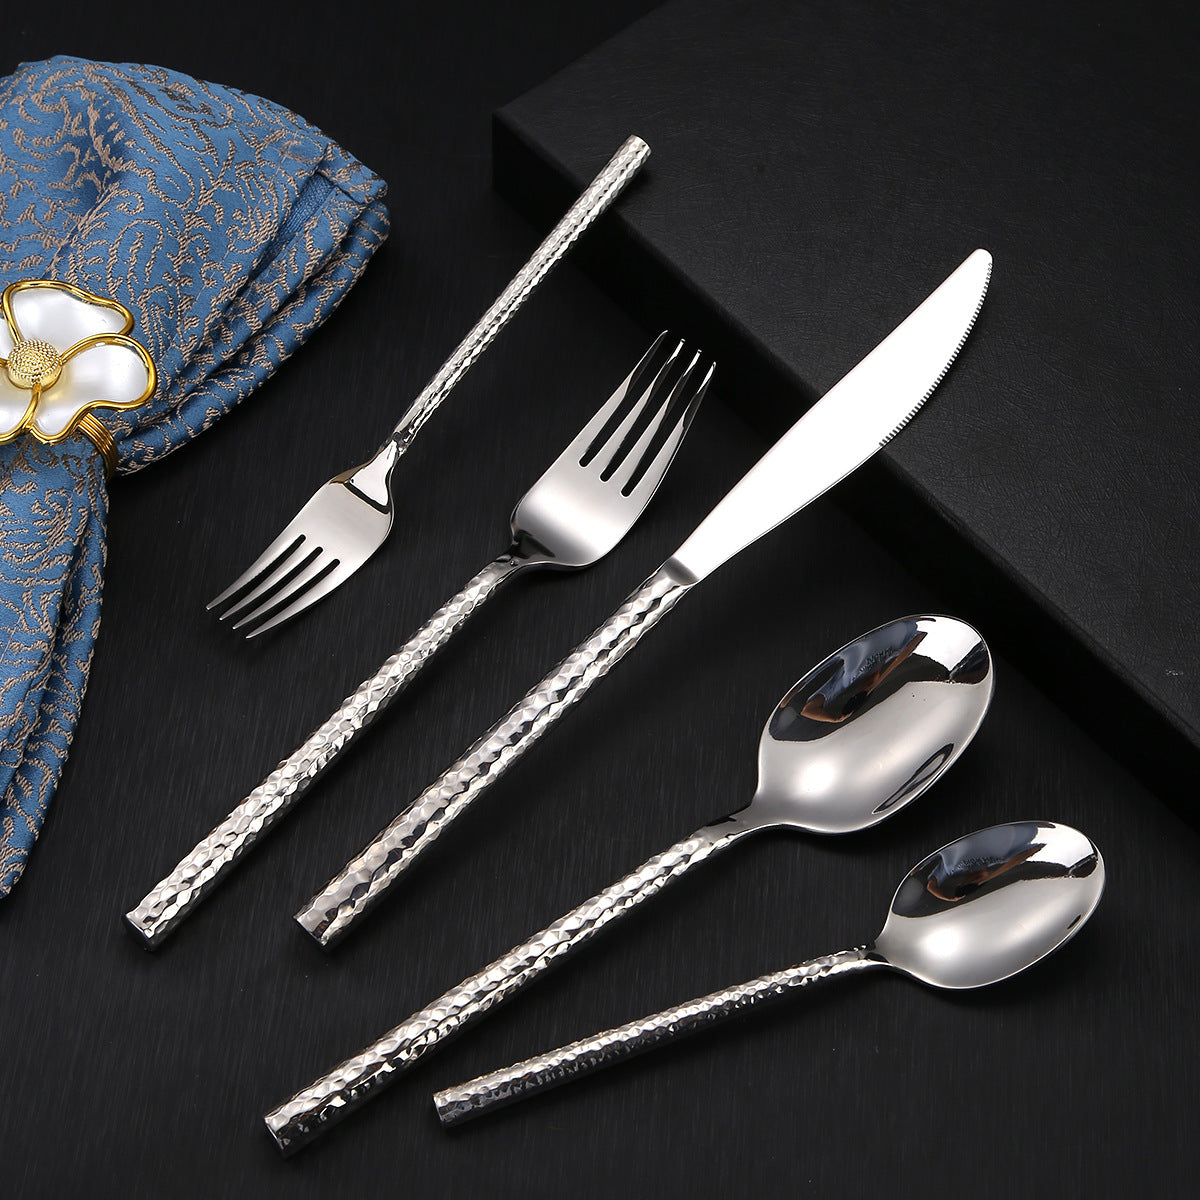 Vaikon Luxury Cutlery Set in Silver by Elle